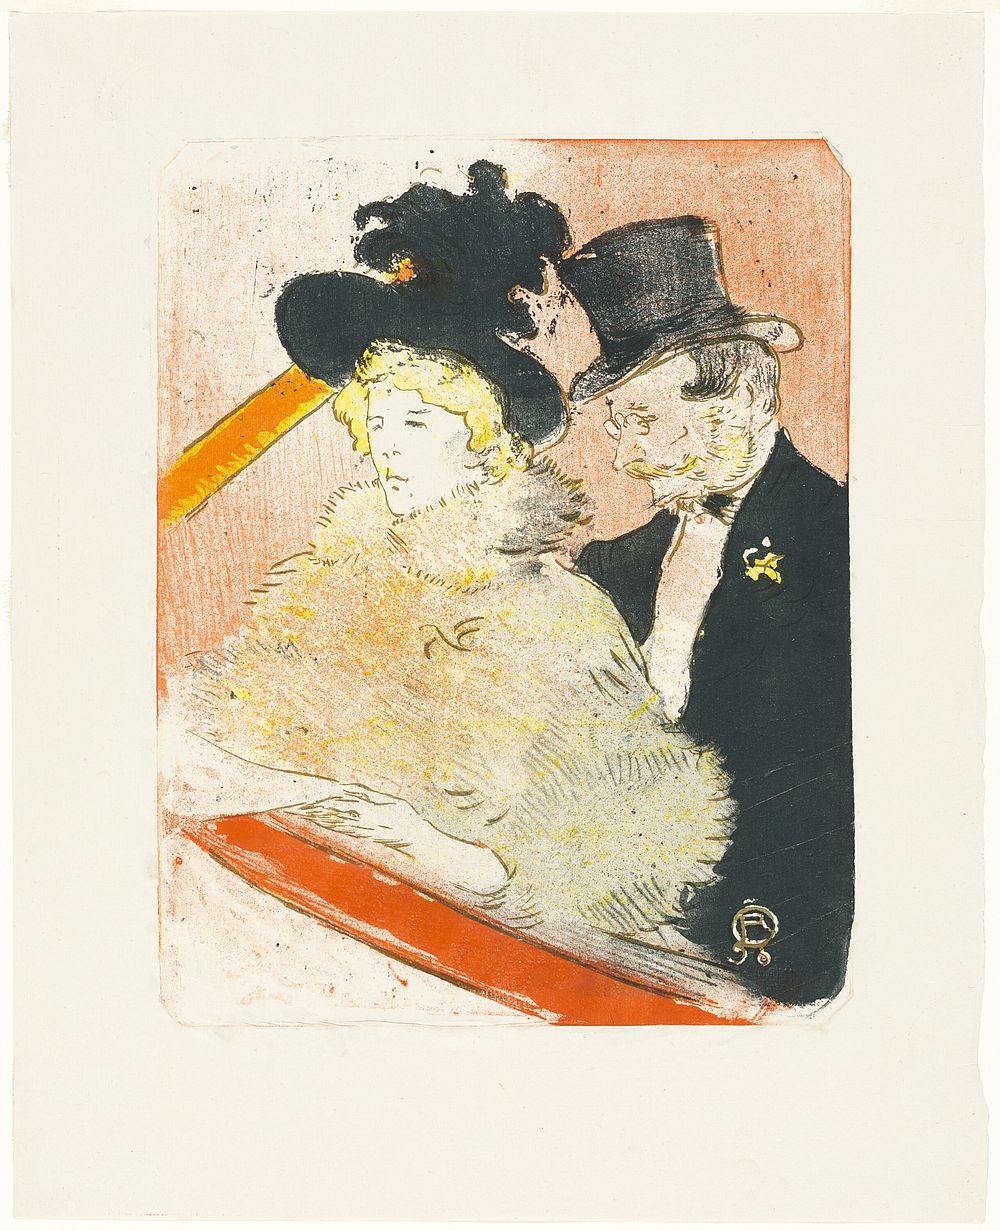 At the Concert by Henri de Toulouse-Lautrec